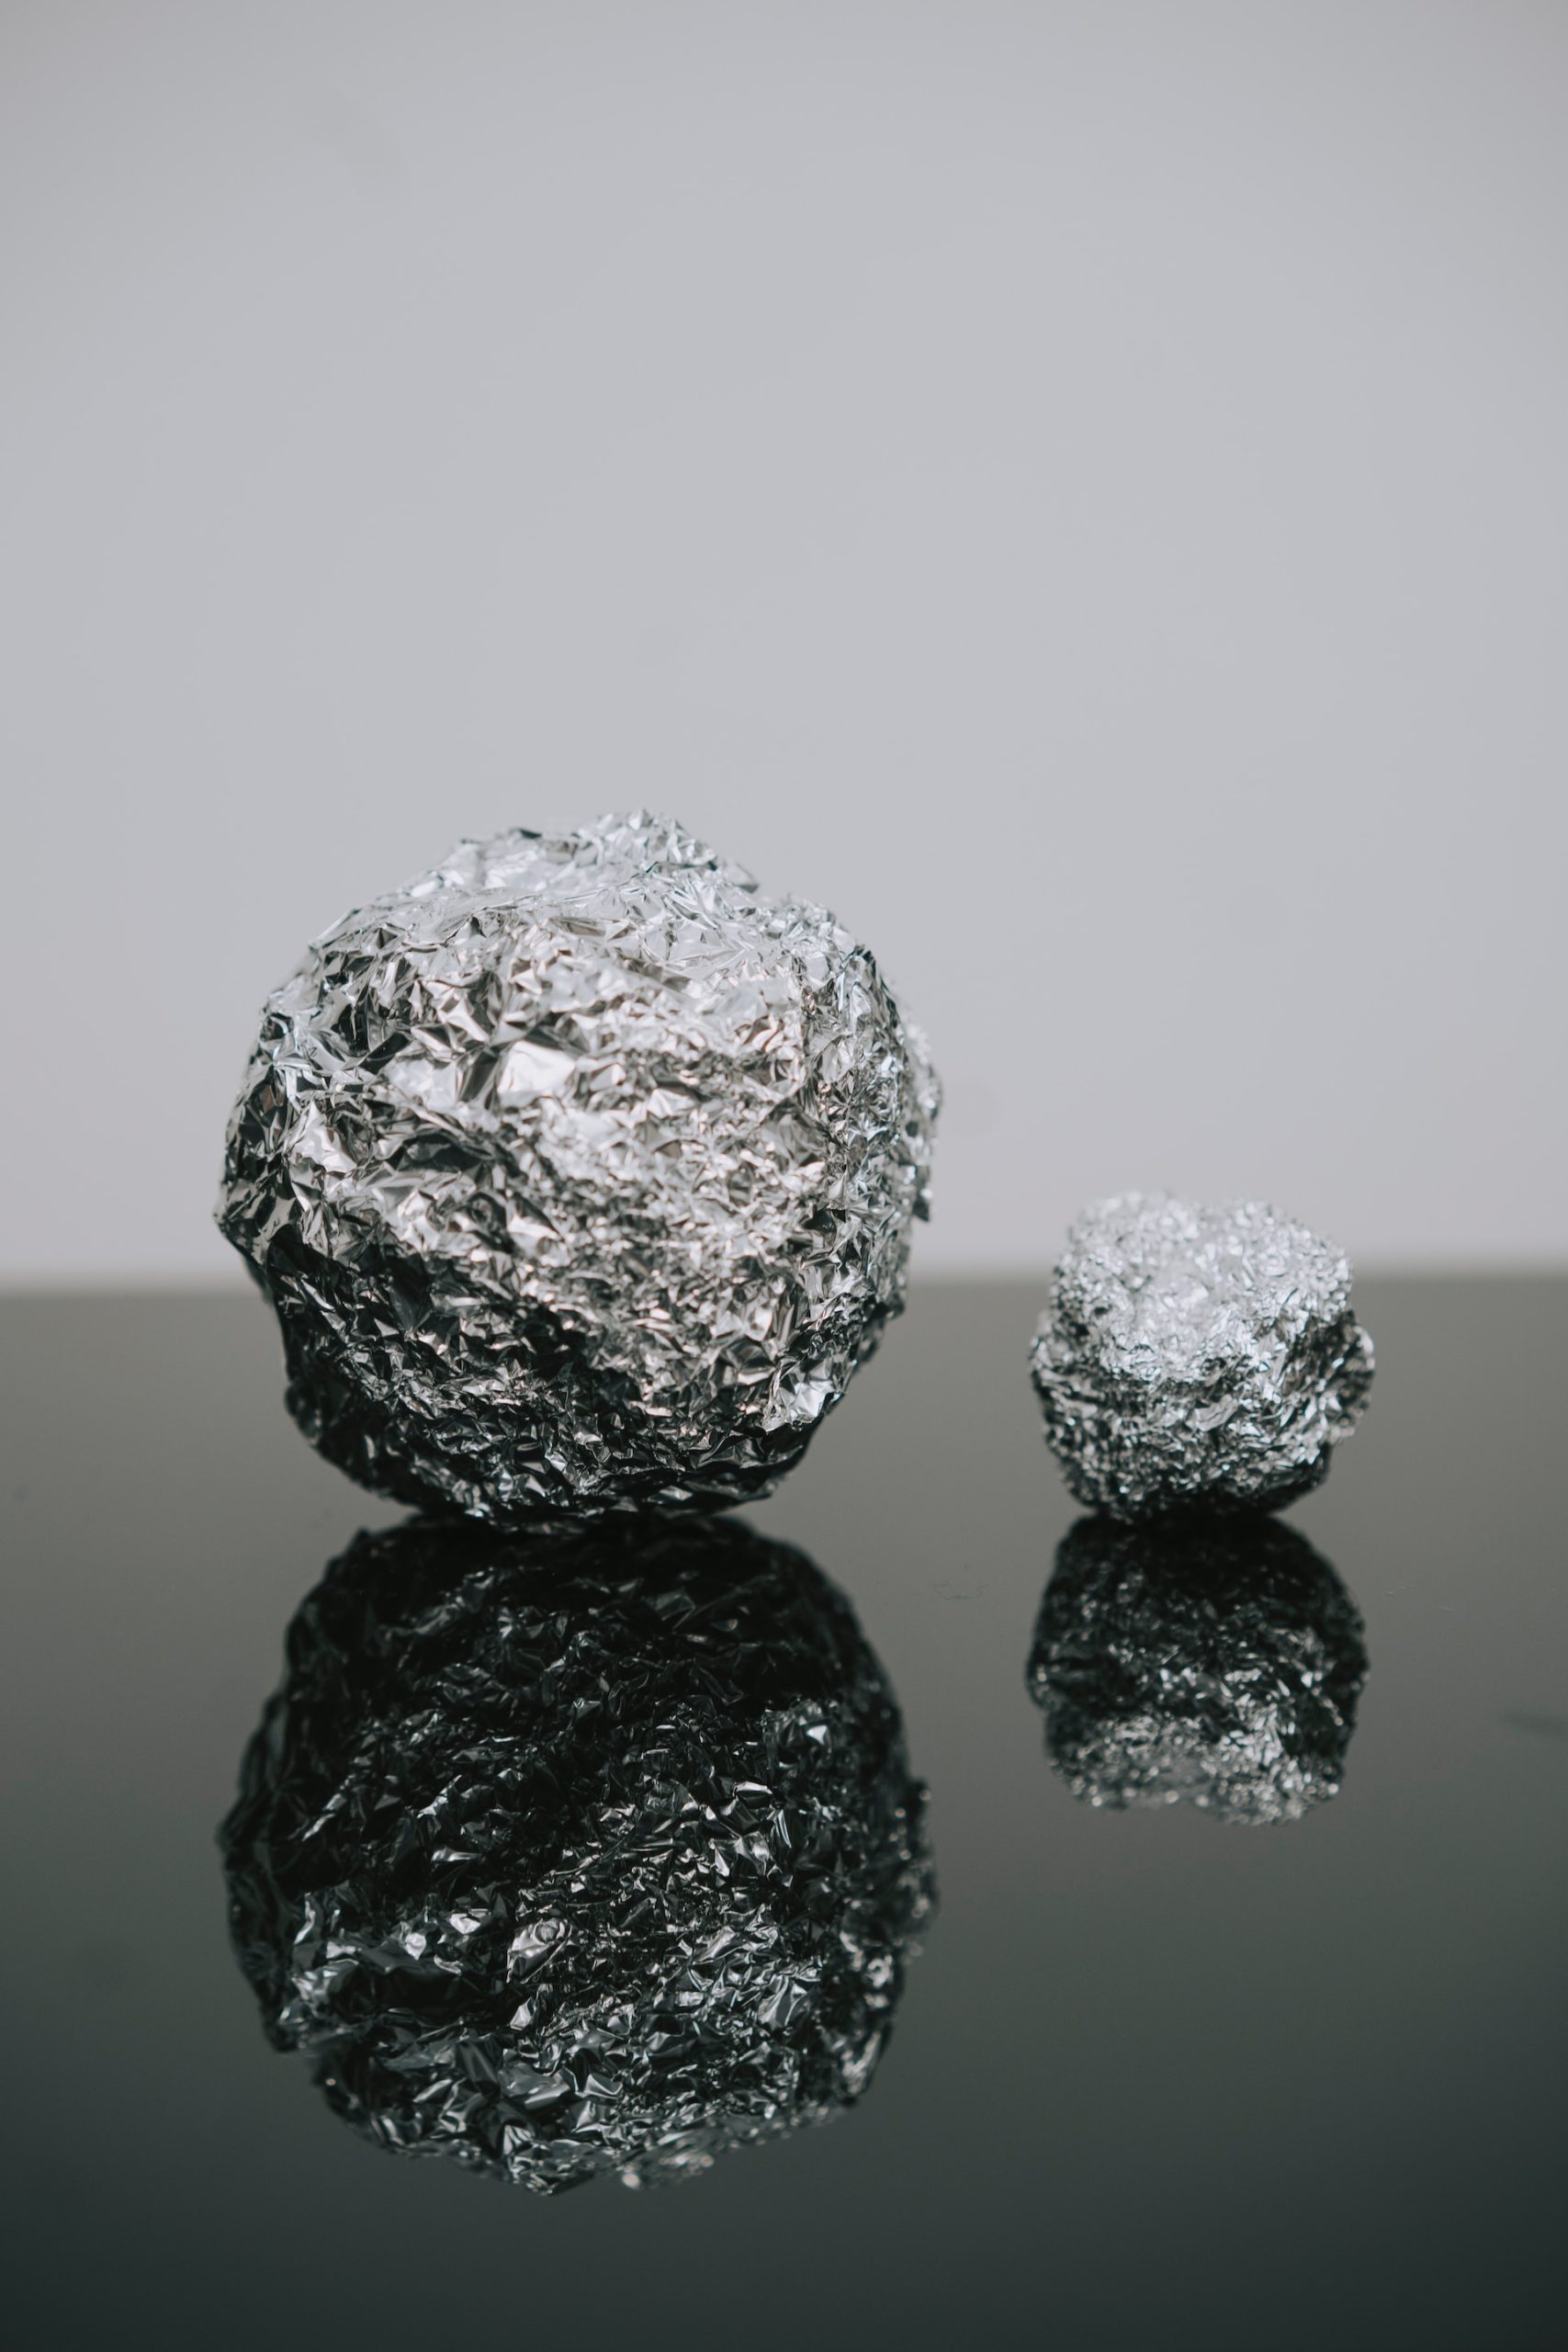 Folia aluminiowa – skorzystaj z jej właściwości czyszczących!